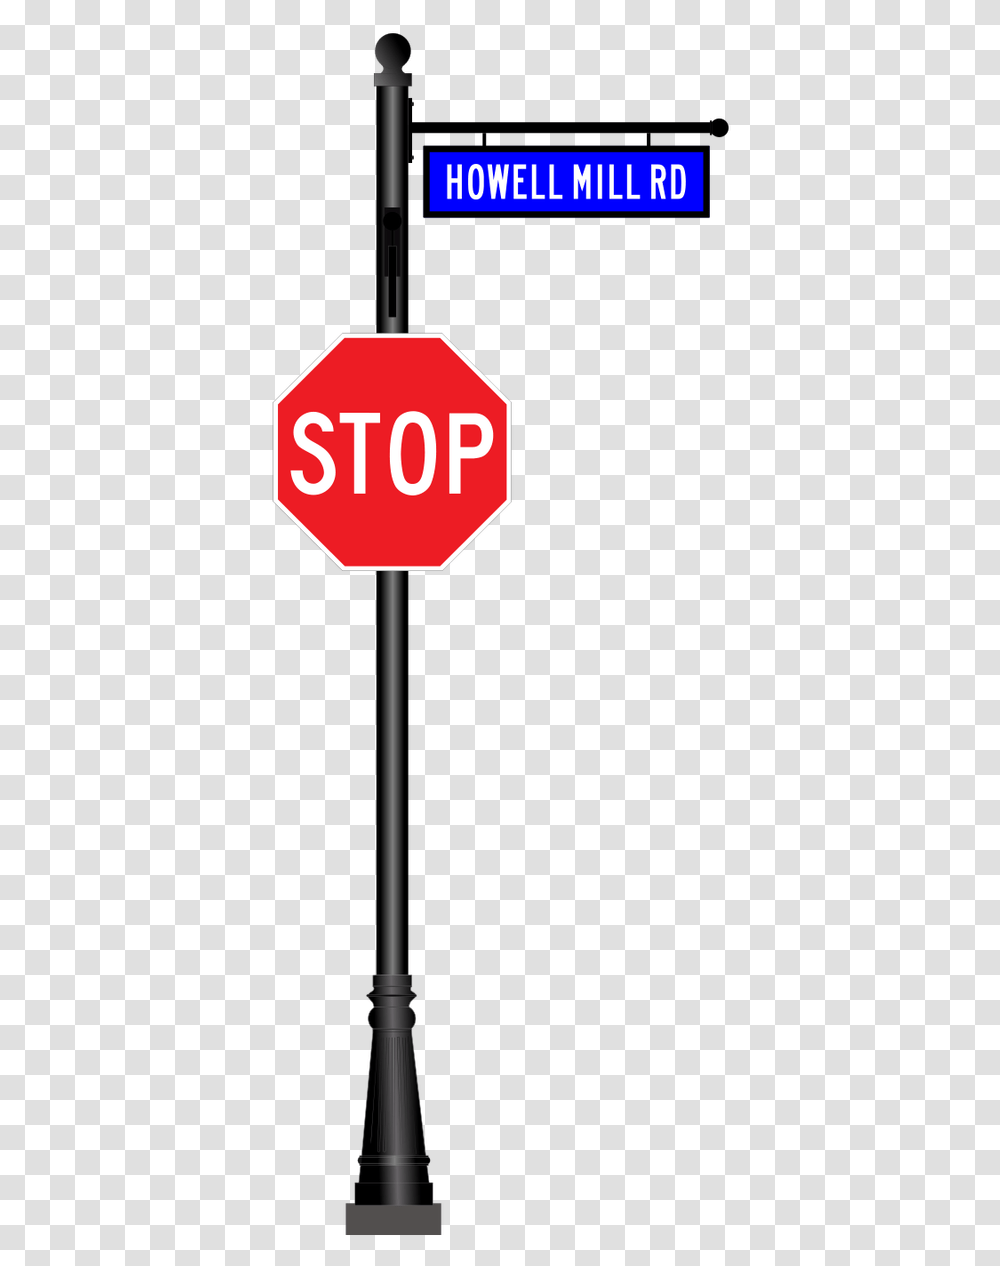 Street Stop Sign Cartoon, Road Sign, Stopsign Transparent Png